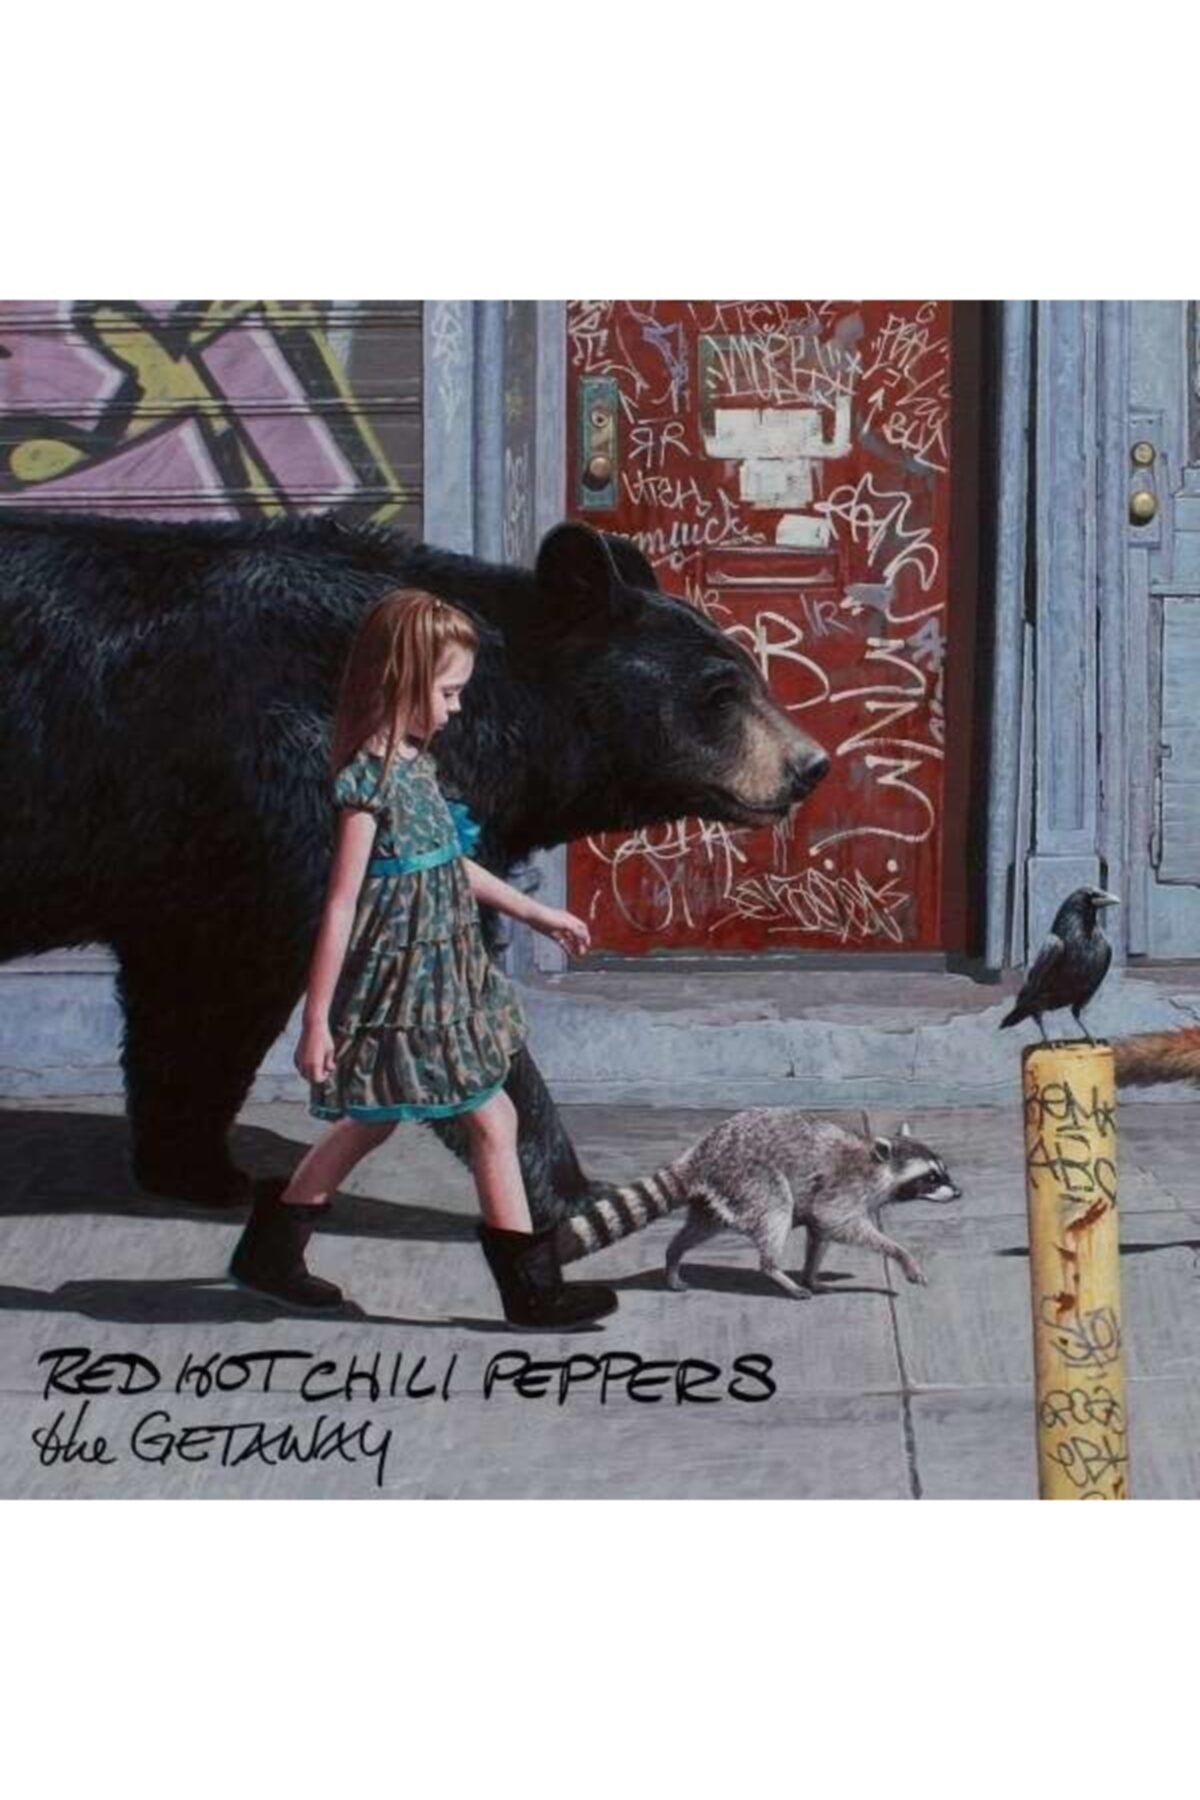 Warner Music Group Cd - Red Hot Chılı Peppers - The Getaway